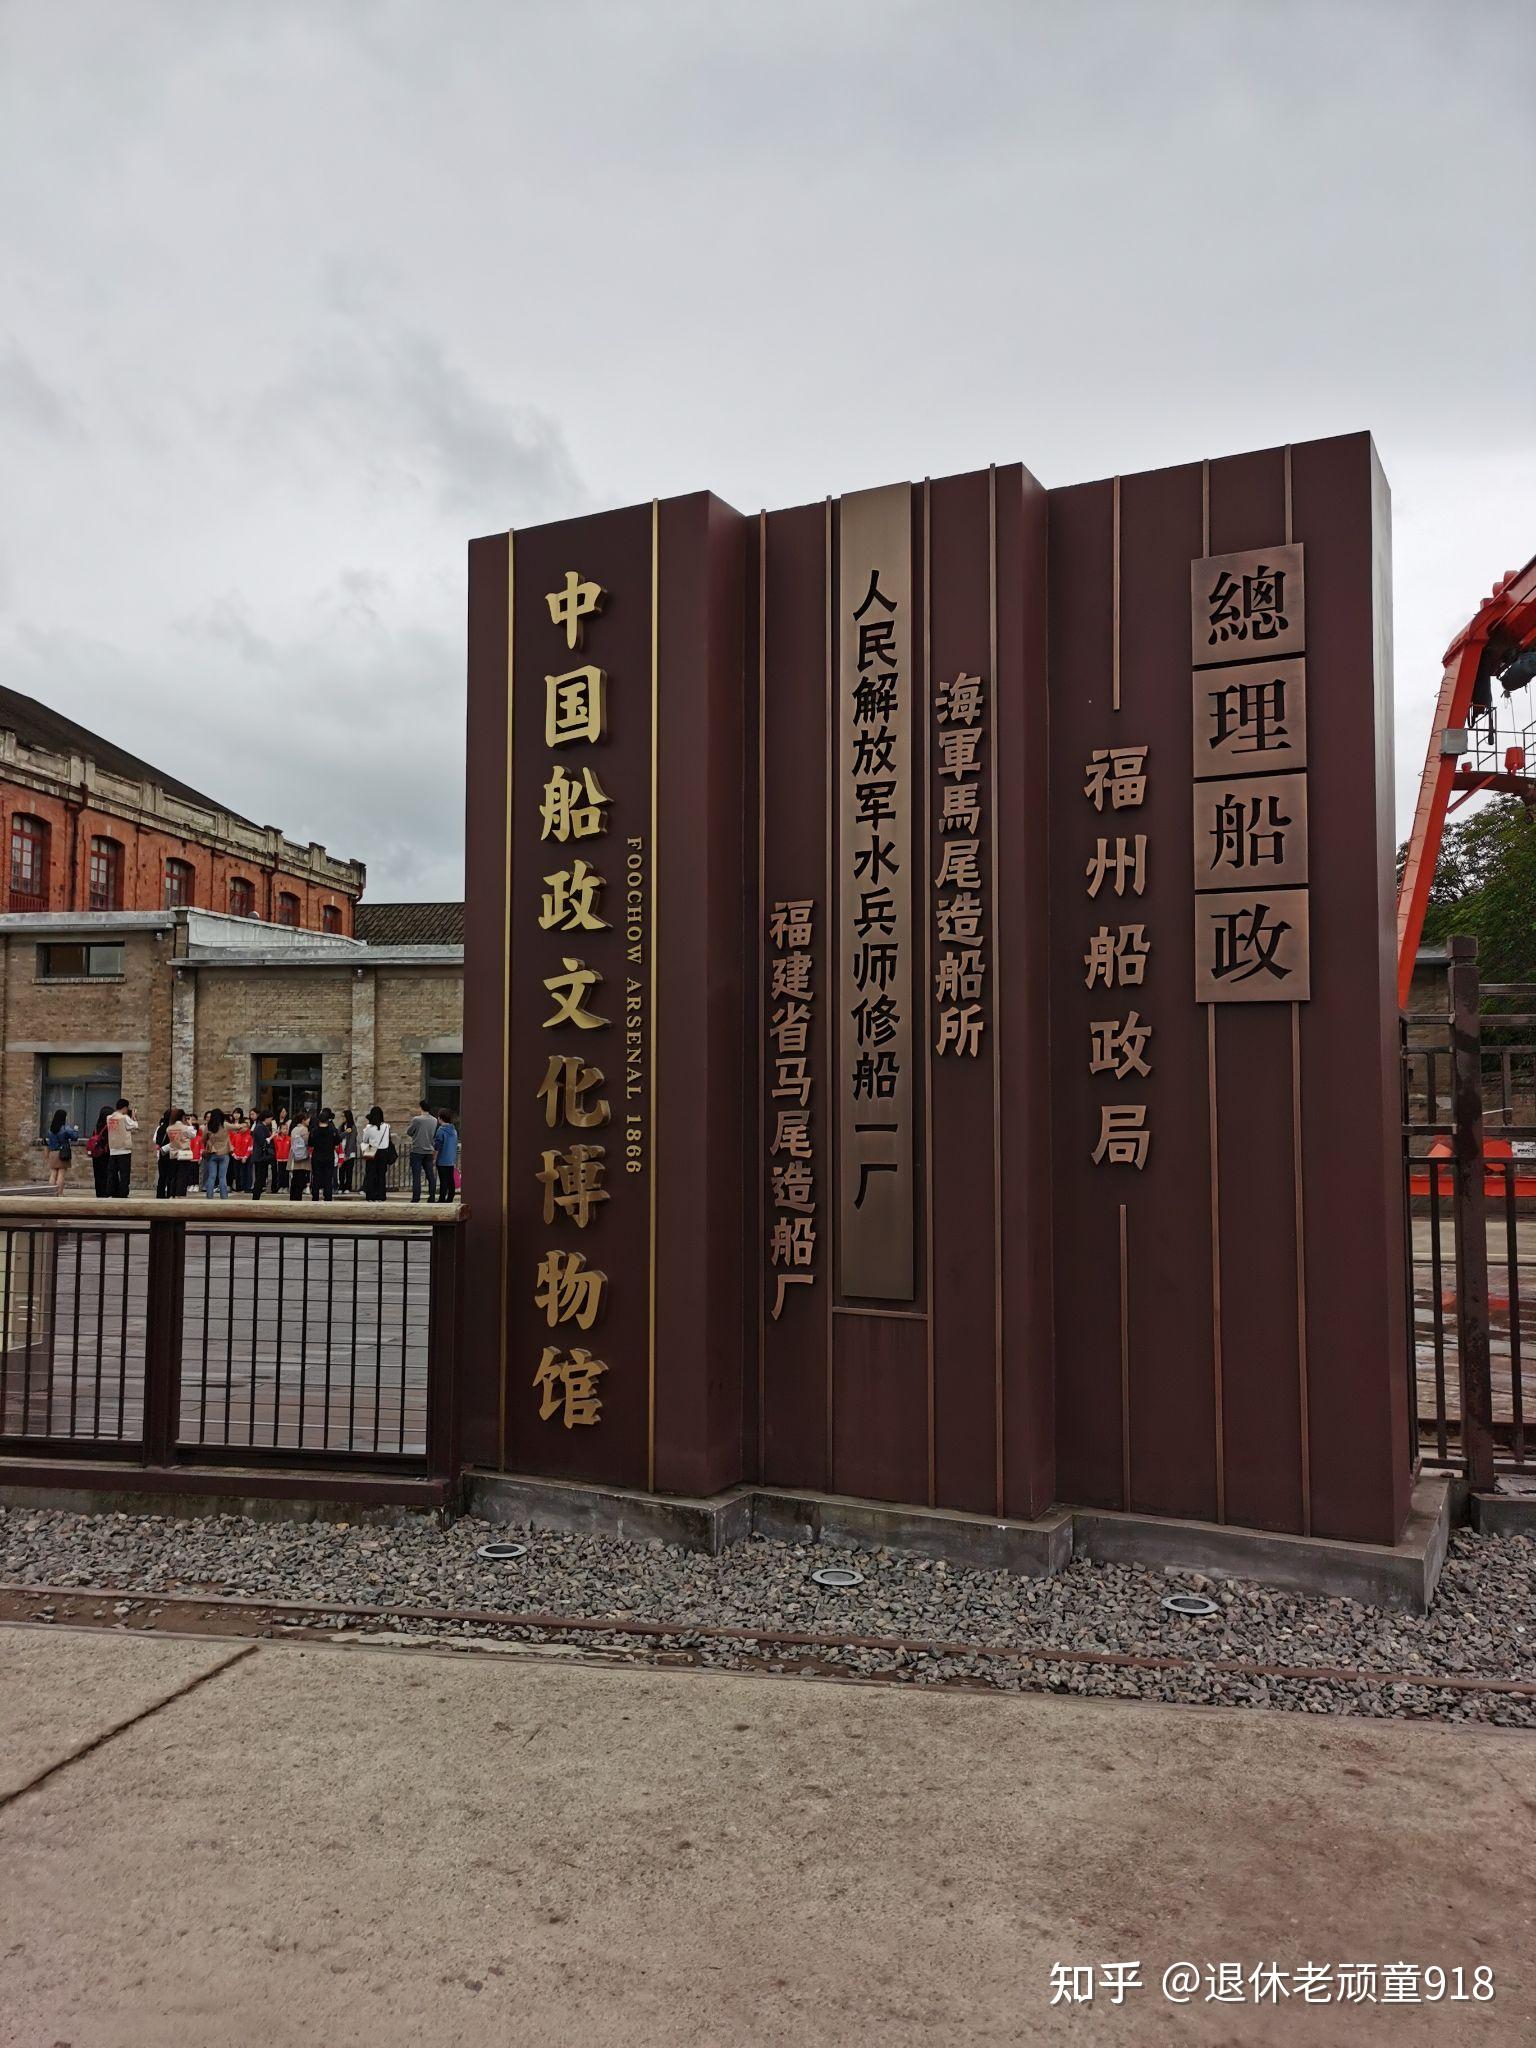 上午参观了中国海军故乡(船政文化主题公园),中国船政文化博物馆,马江